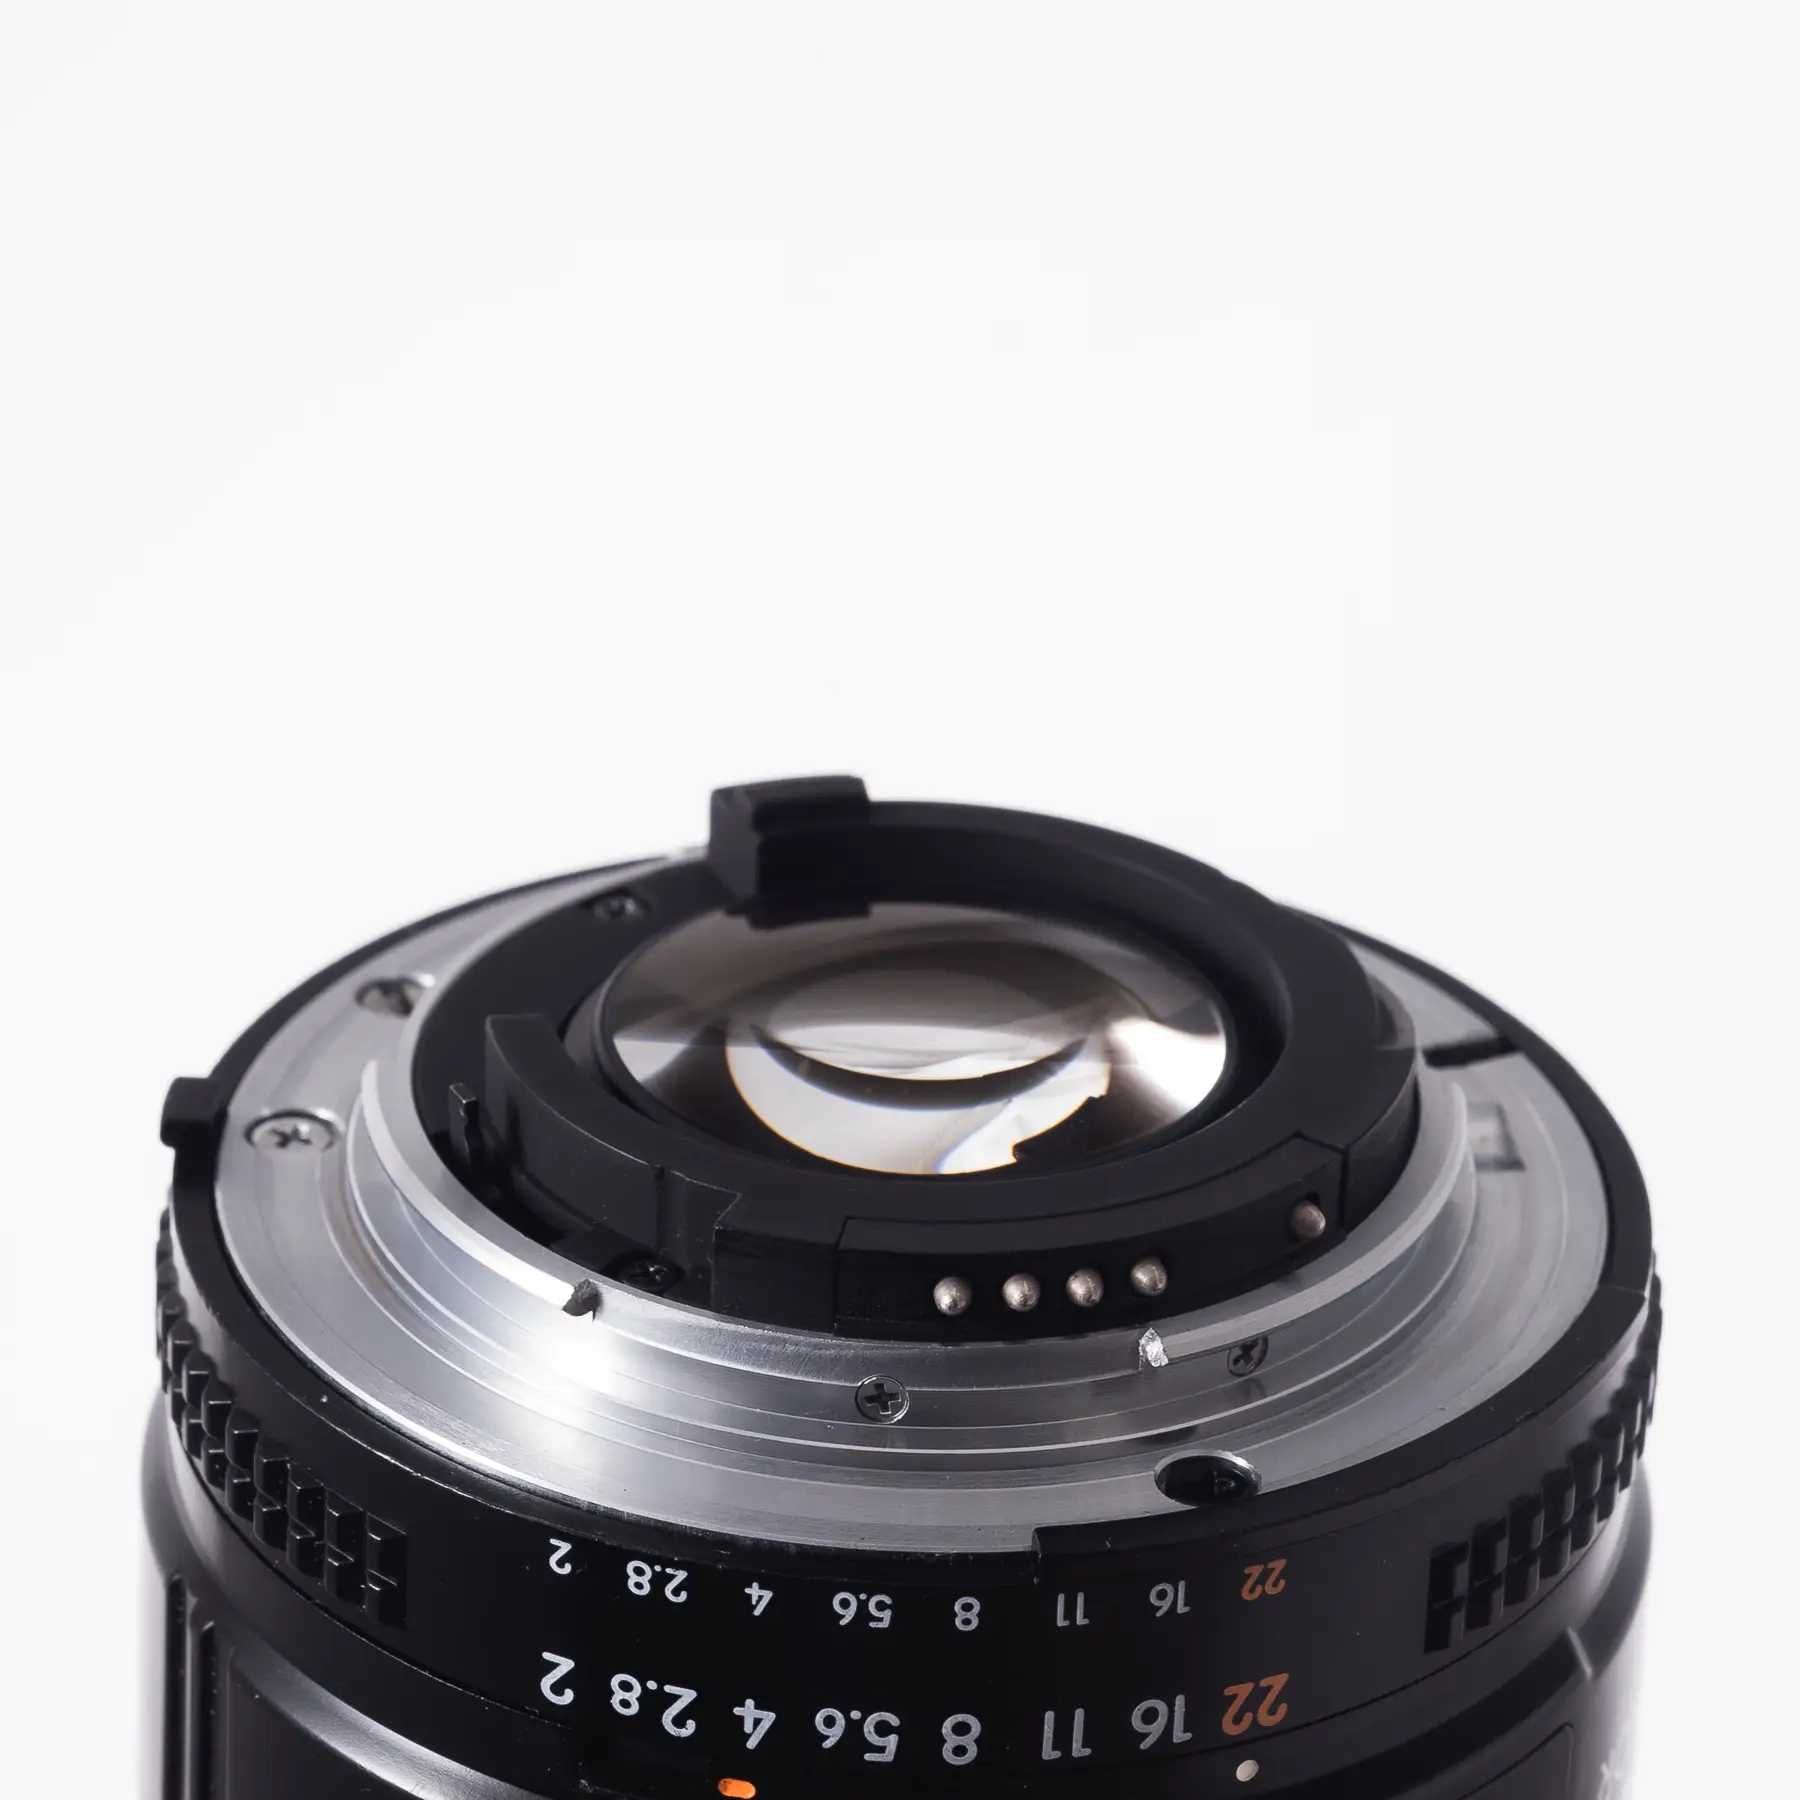 Об'єктив Nikon 35mm f/2D AF Nikkor